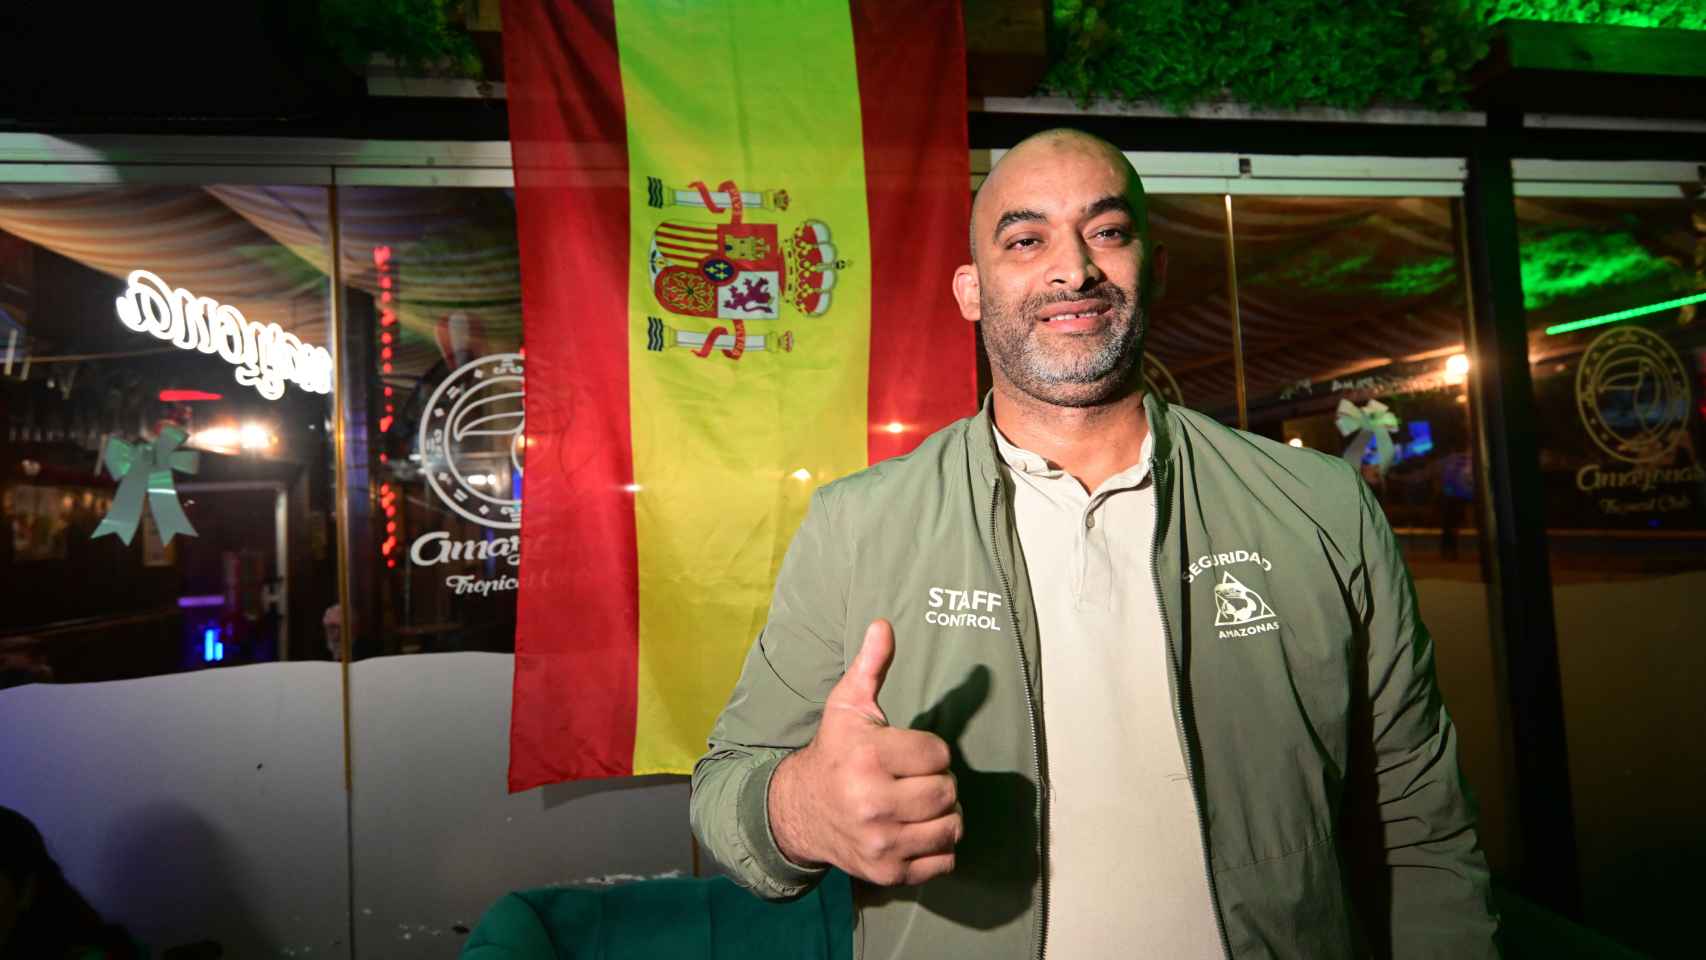 Raschid, encargado de seguridad, posa junto a la bandera de España que cuelga en el local.